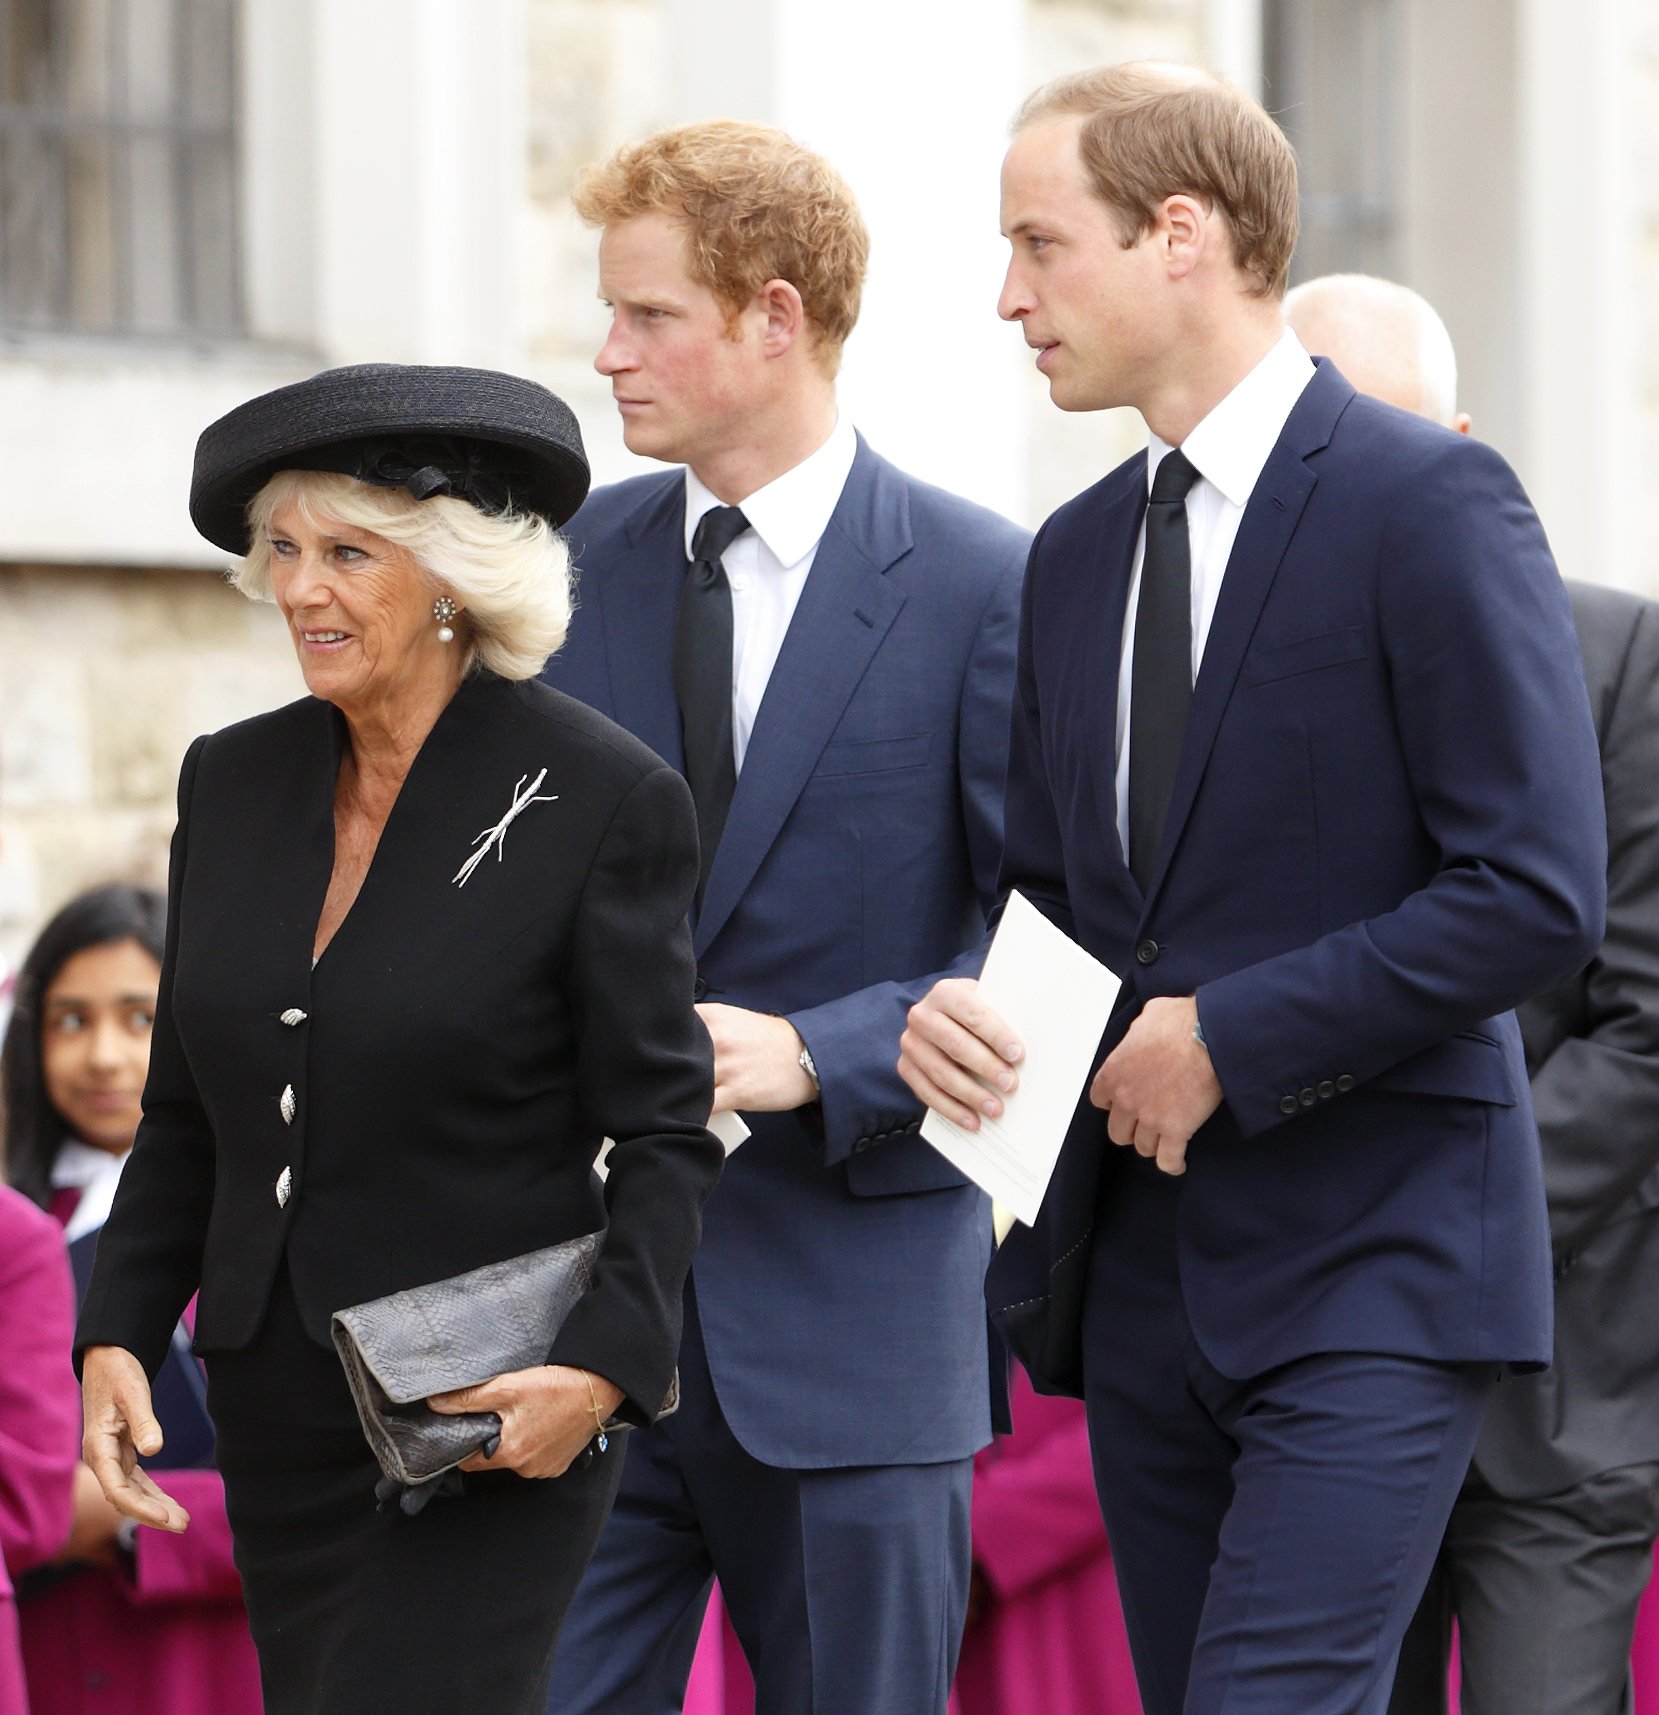 Königingemahlin Camilla mit Prinz Harry und Prinz William in Brentwood, England 2013. | Quelle: Getty Images 